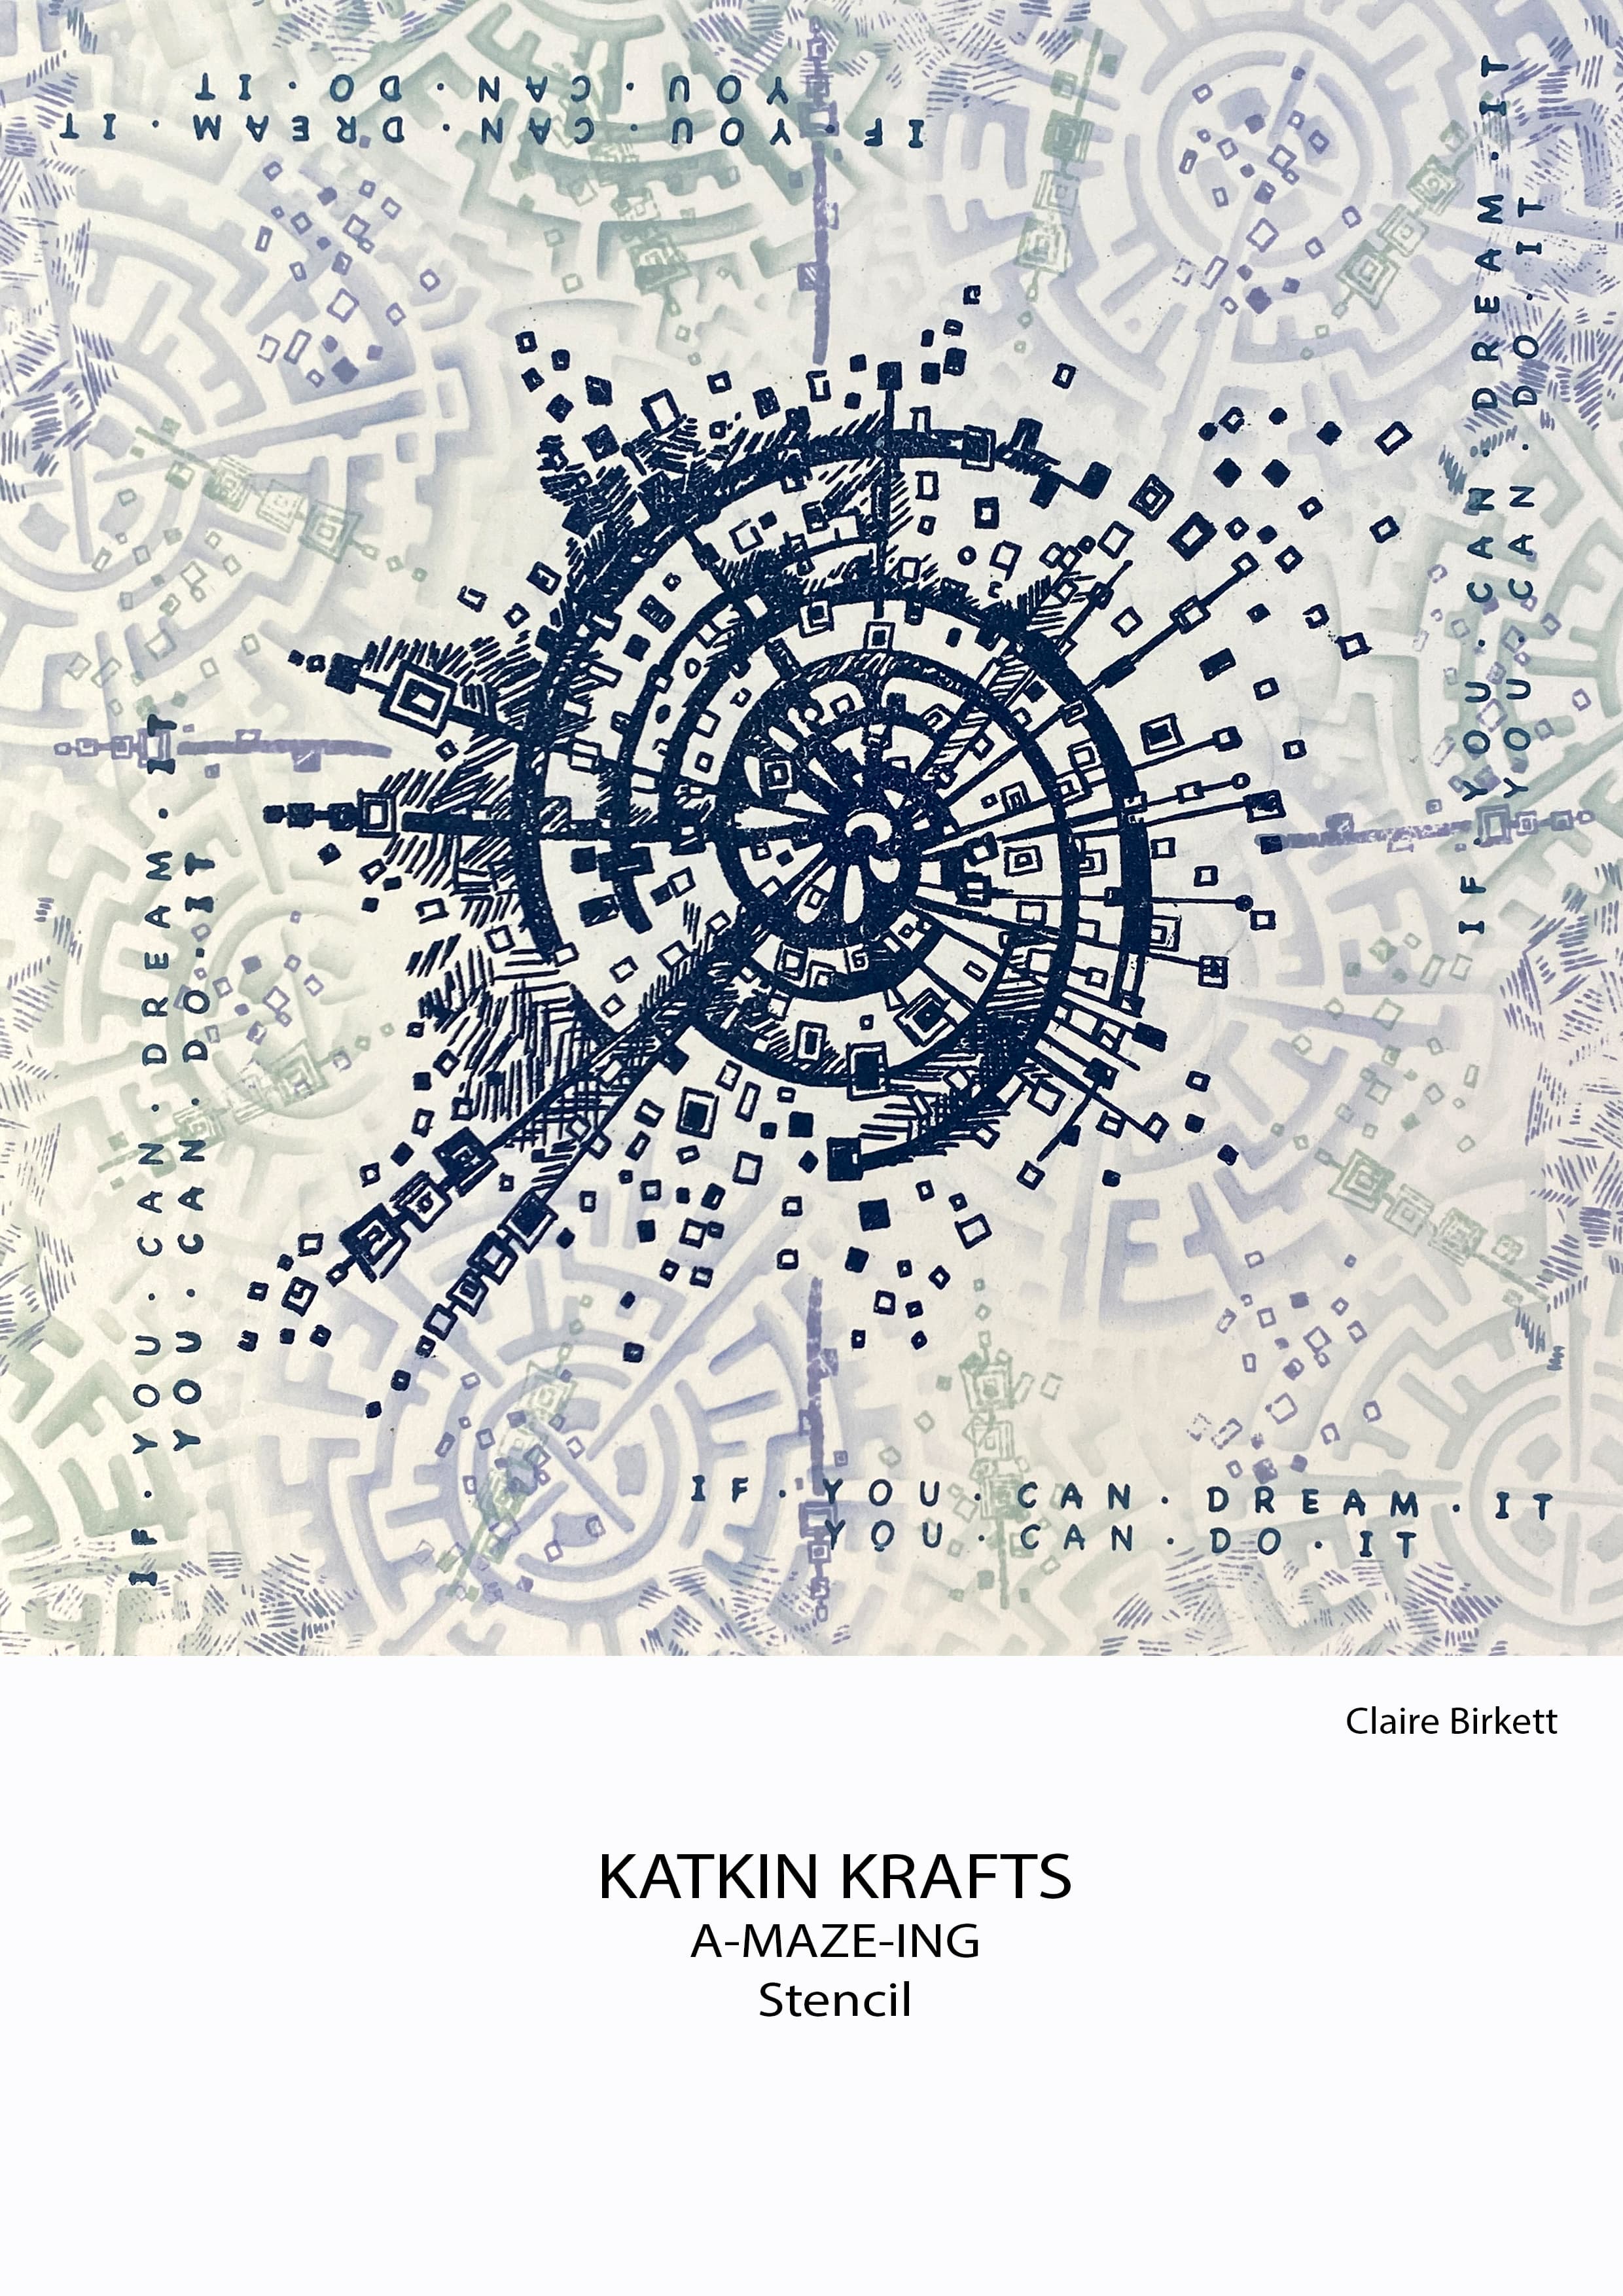 Katkin Krafts A-maze-ing 7 in x 7 in Stencil